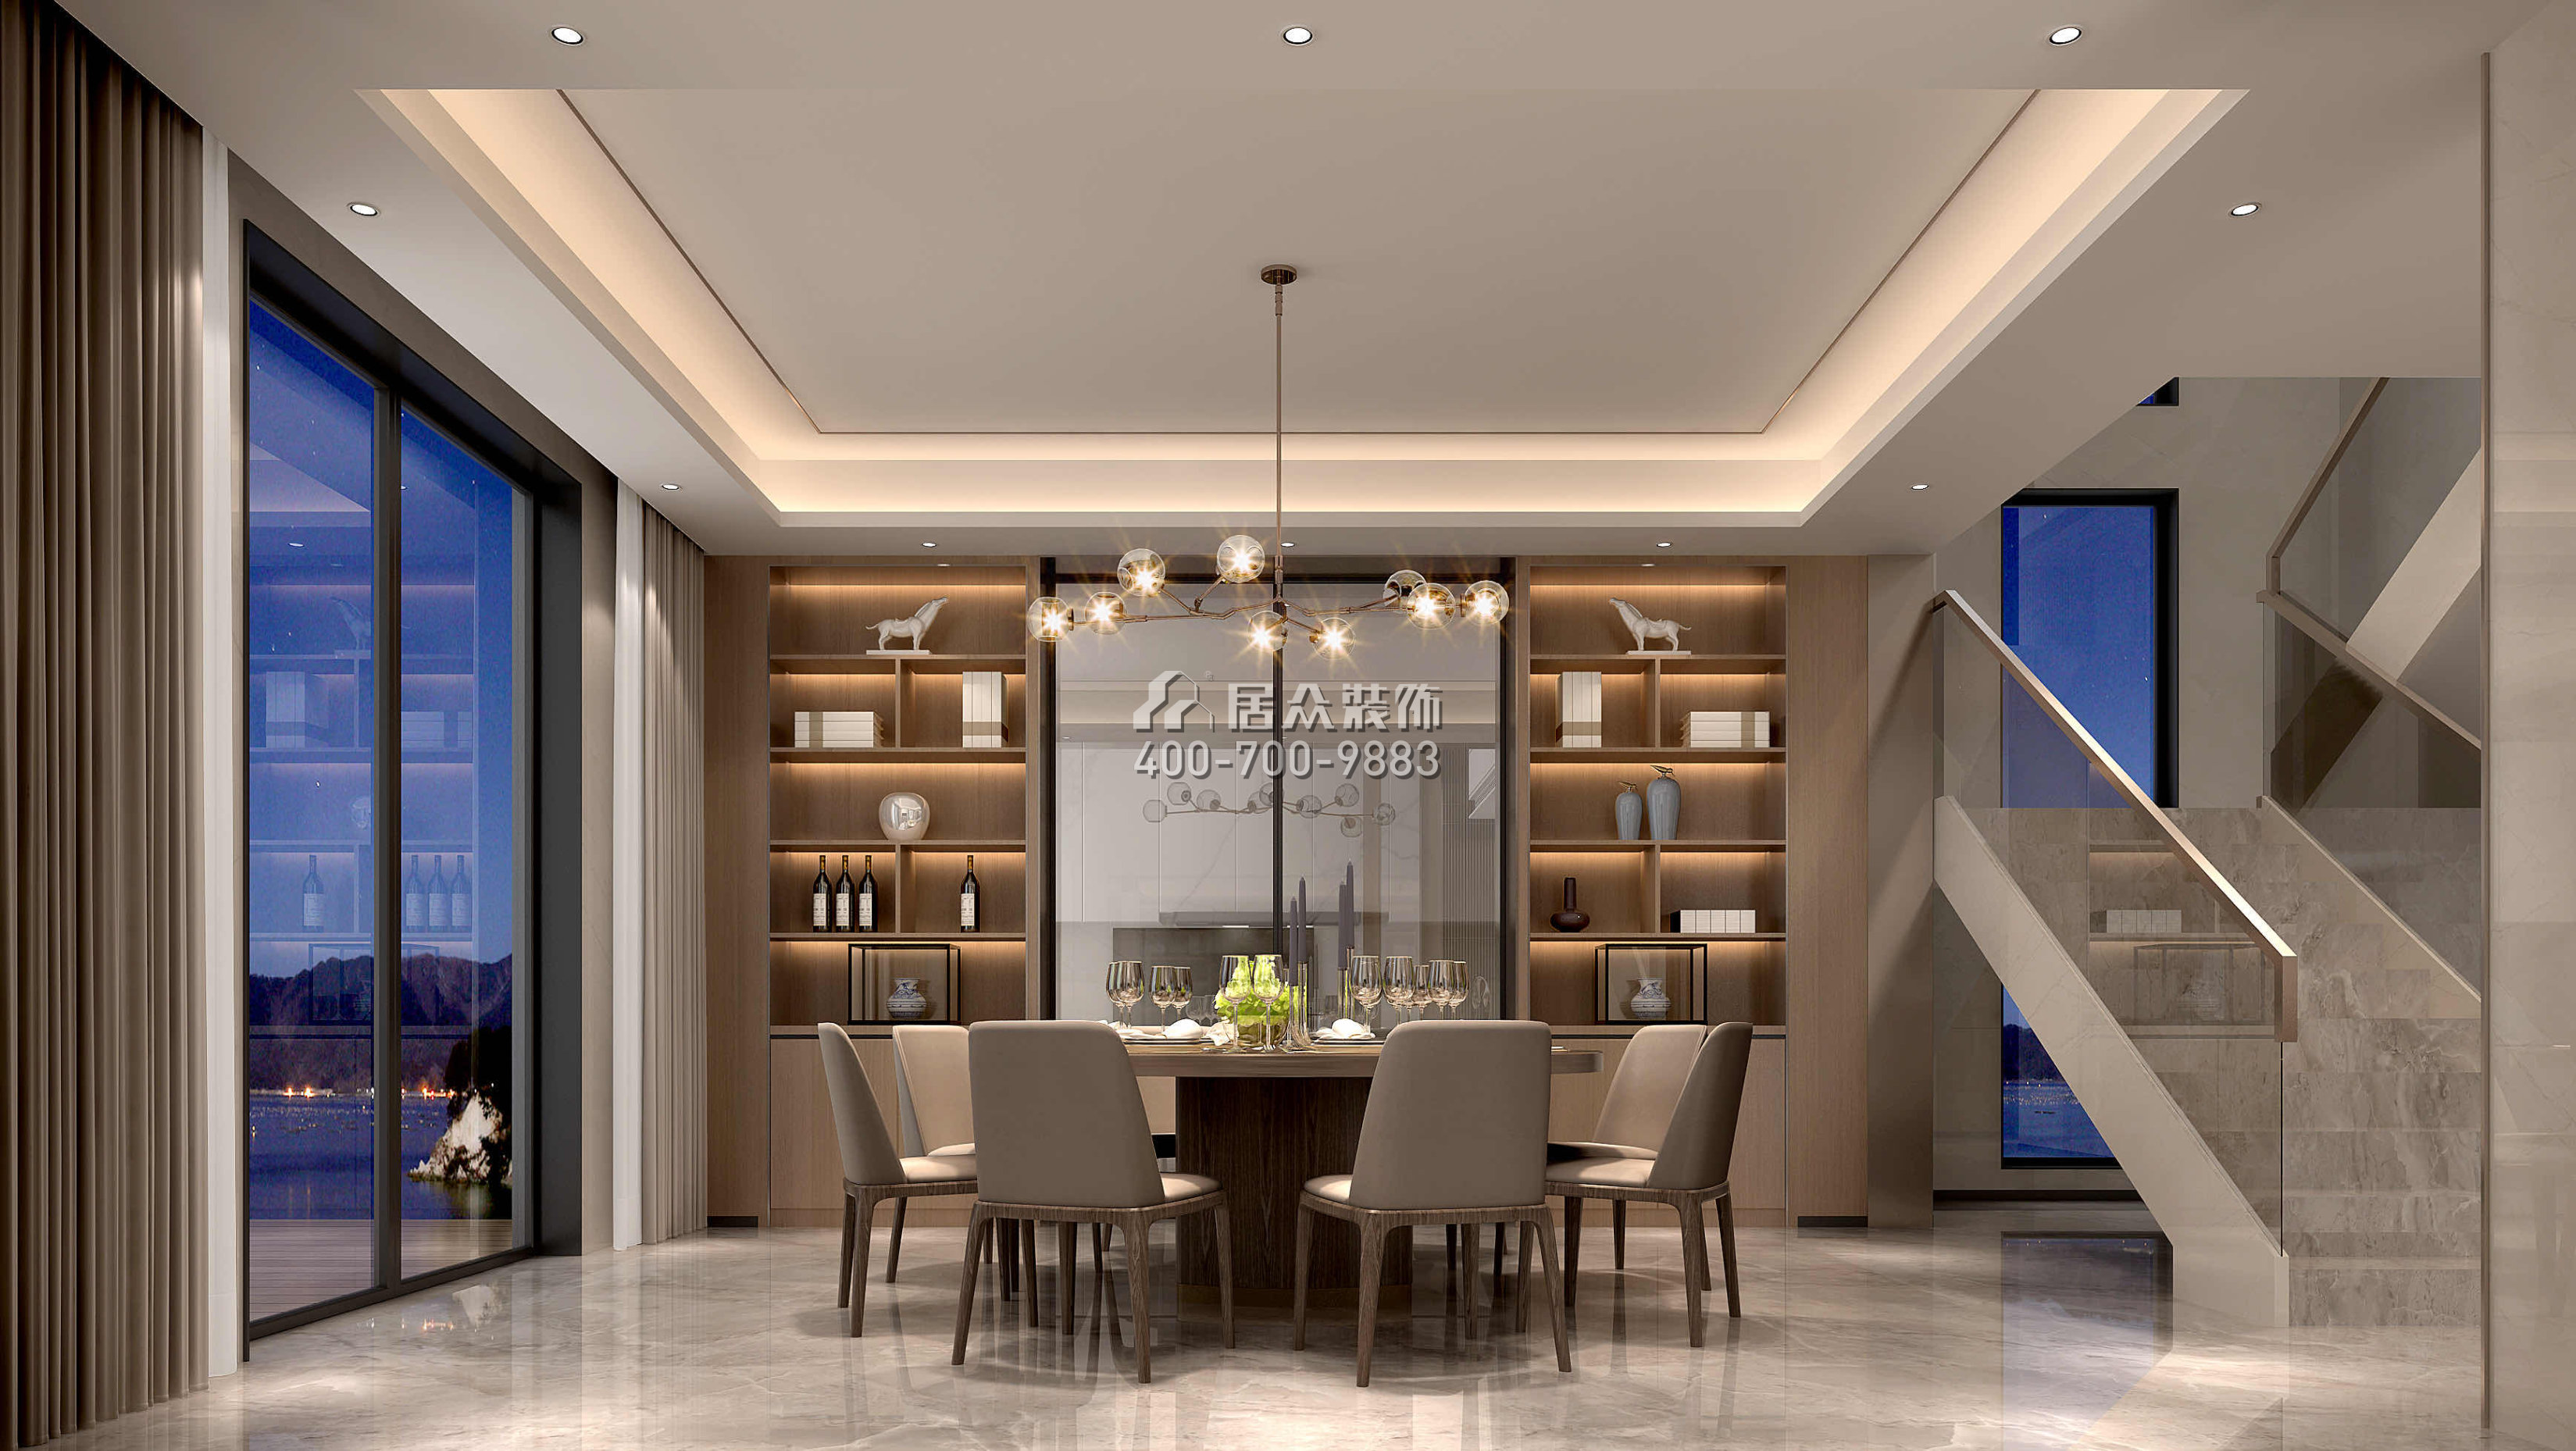 海逸豪庭366平方米現代簡約風格別墅戶型餐廳裝修效果圖